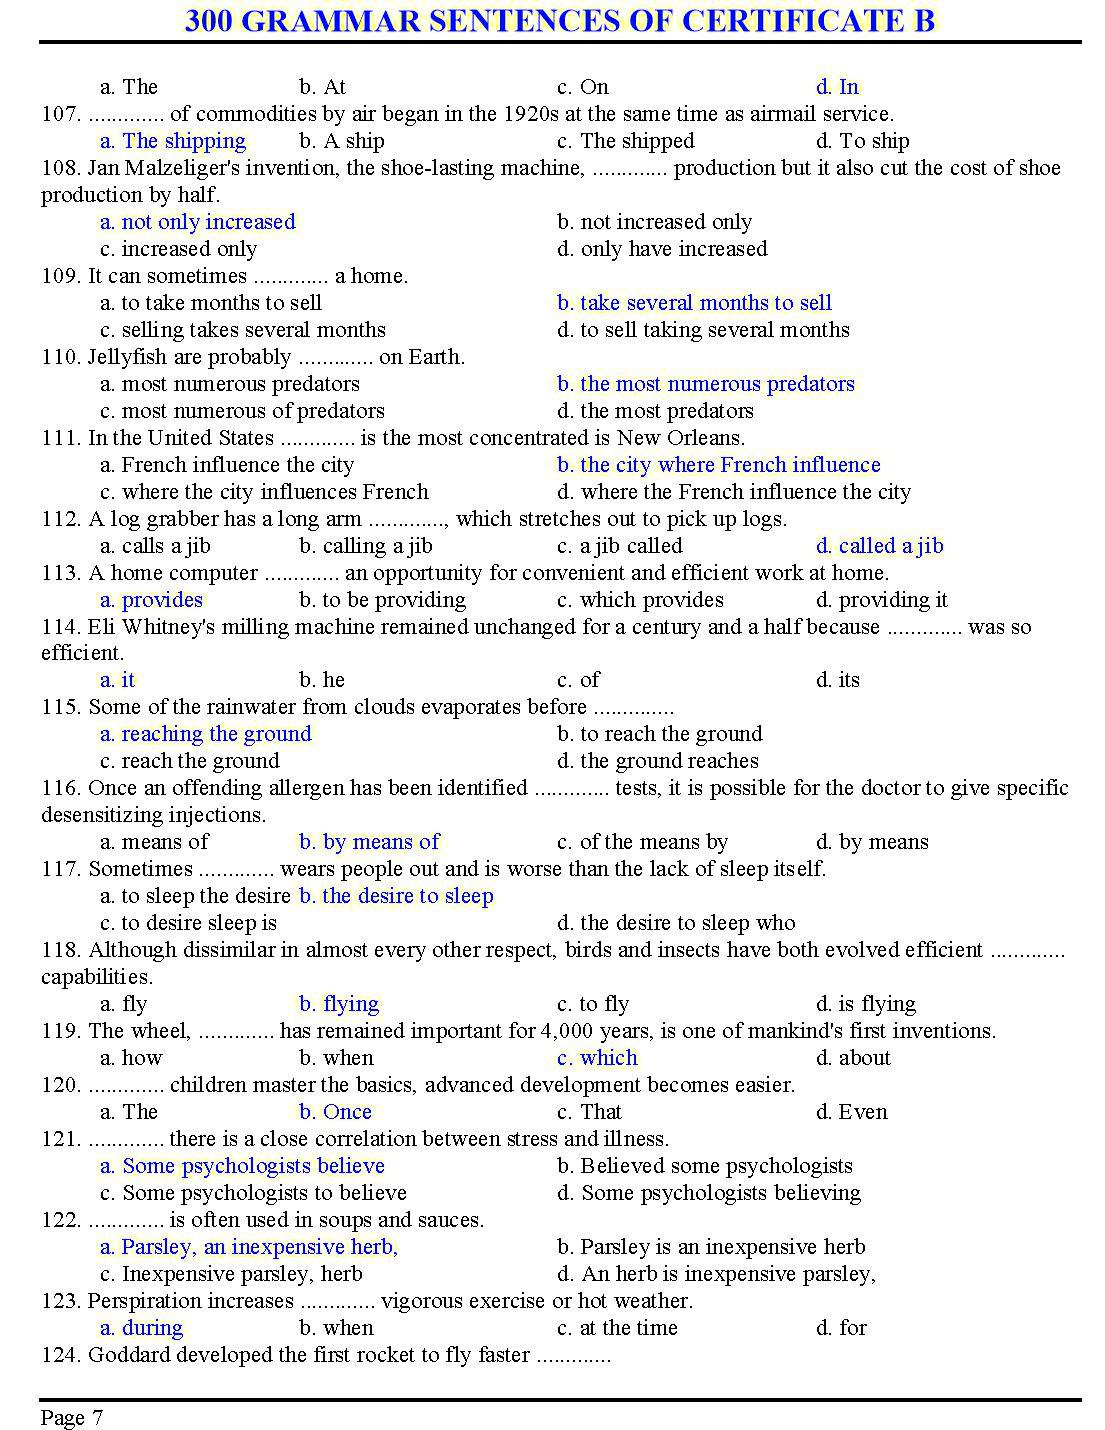 300 grammar sentences of certificate B trang 7